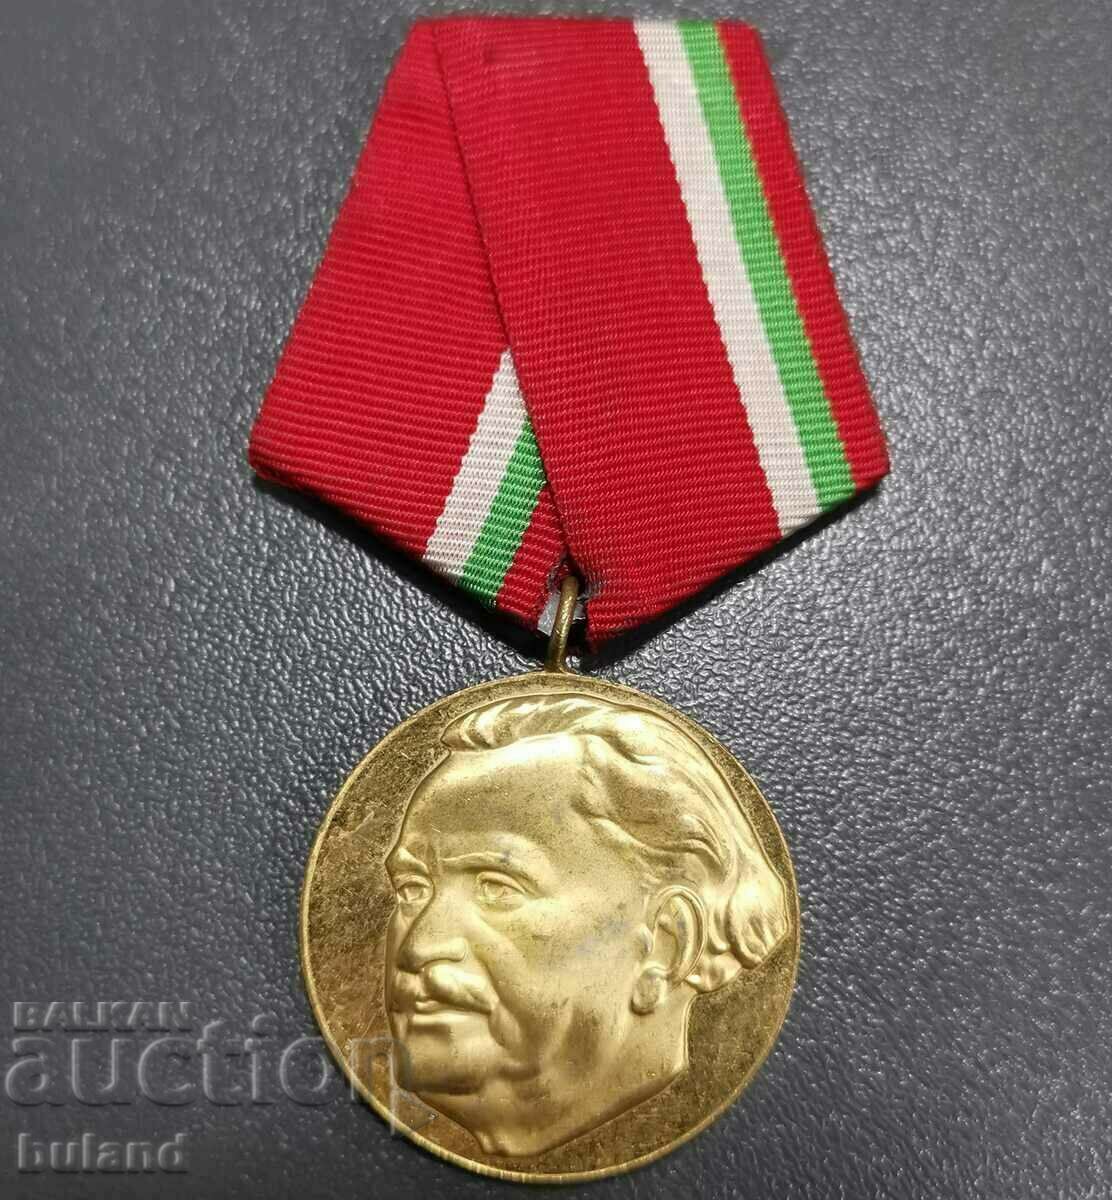 Medalia socială 100 de ani de la nașterea lui Georgi Dimitrov 1882-1982